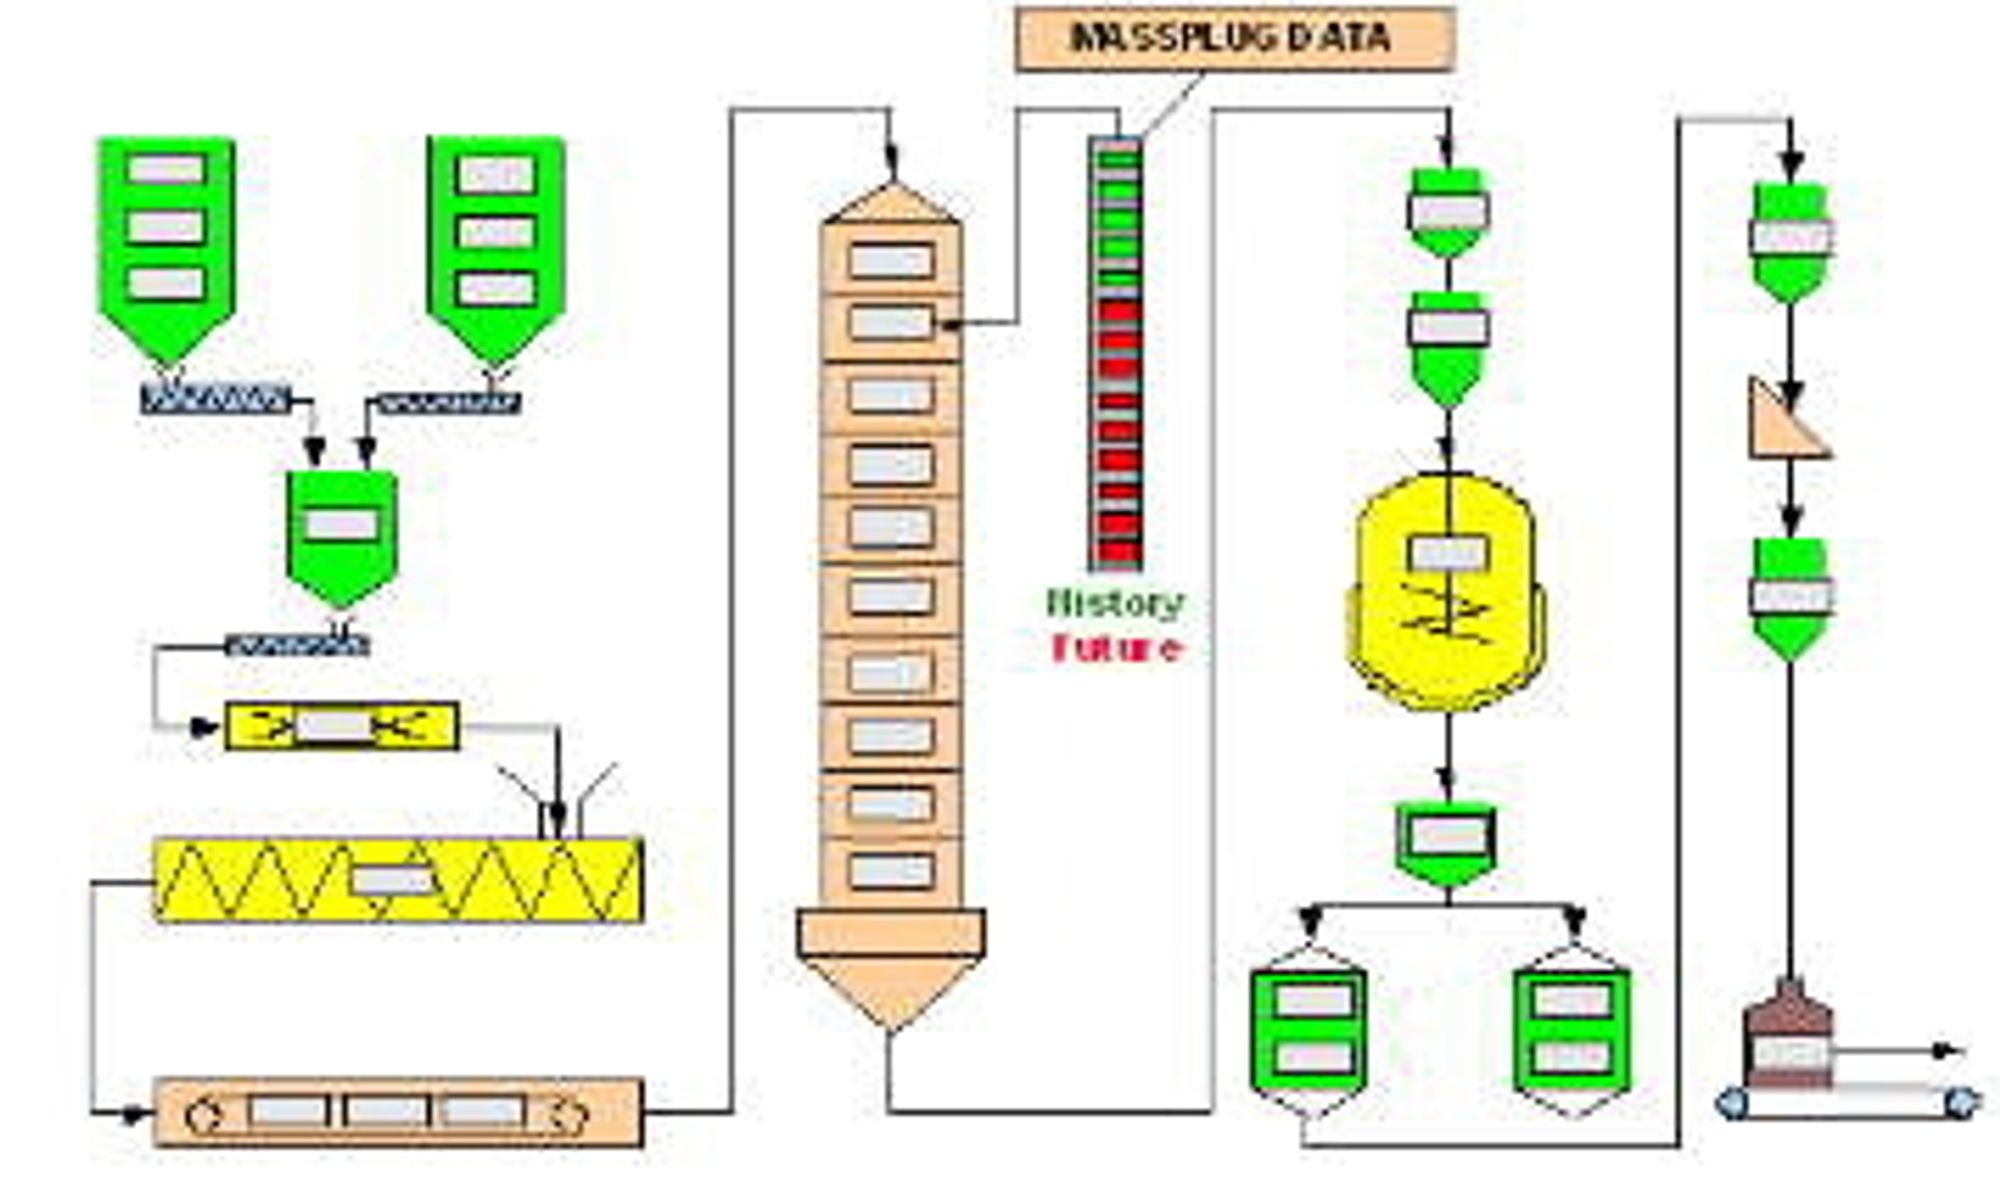 Eksempel på sporing i fôrproduksjonsfabrikk. De grå fir-
kantene illustrerer masseplugger (Ill. Prediktor).